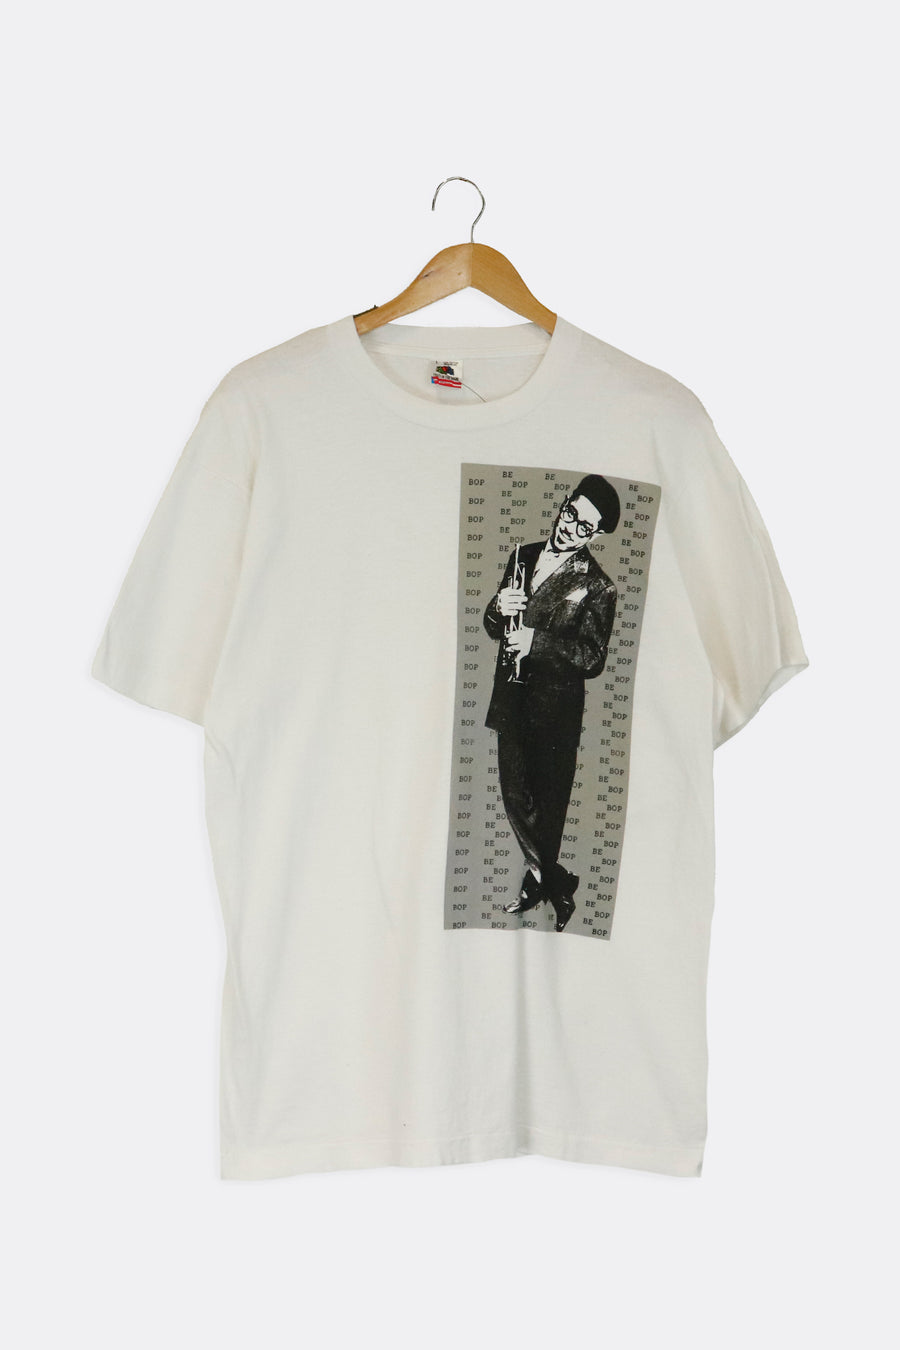 Vintage Be Bop Jazz Trumpet Graphic T Shirt Sz L